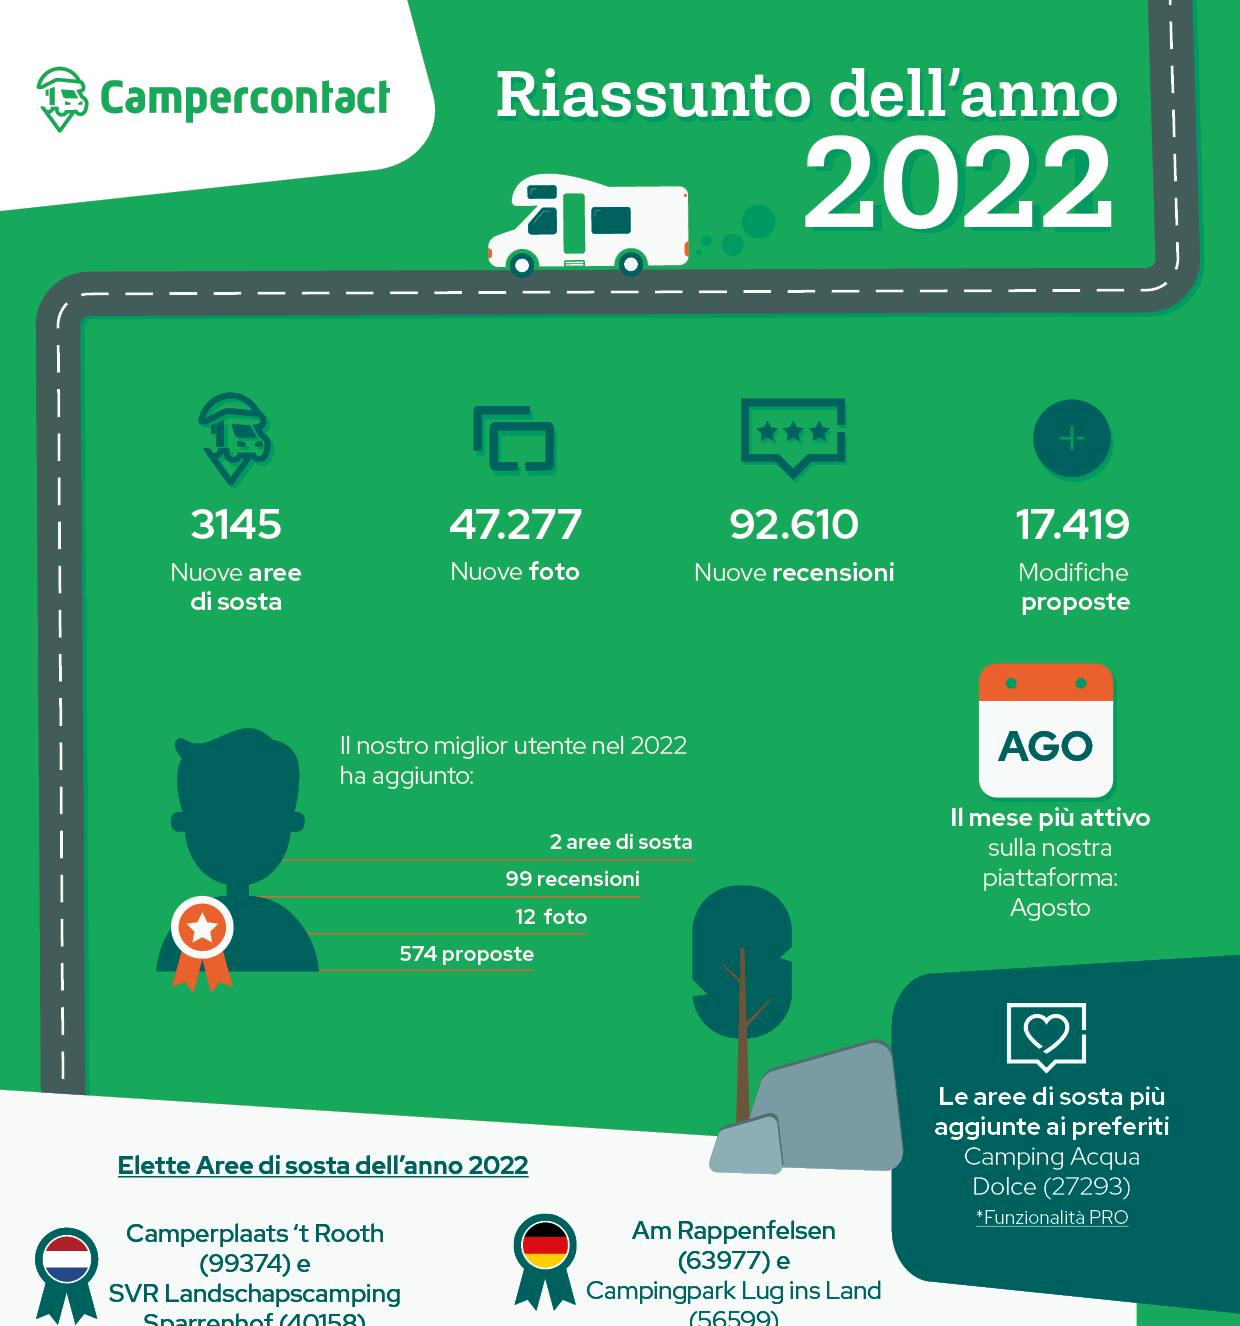 Bilancio annuale di Campercontact 2022